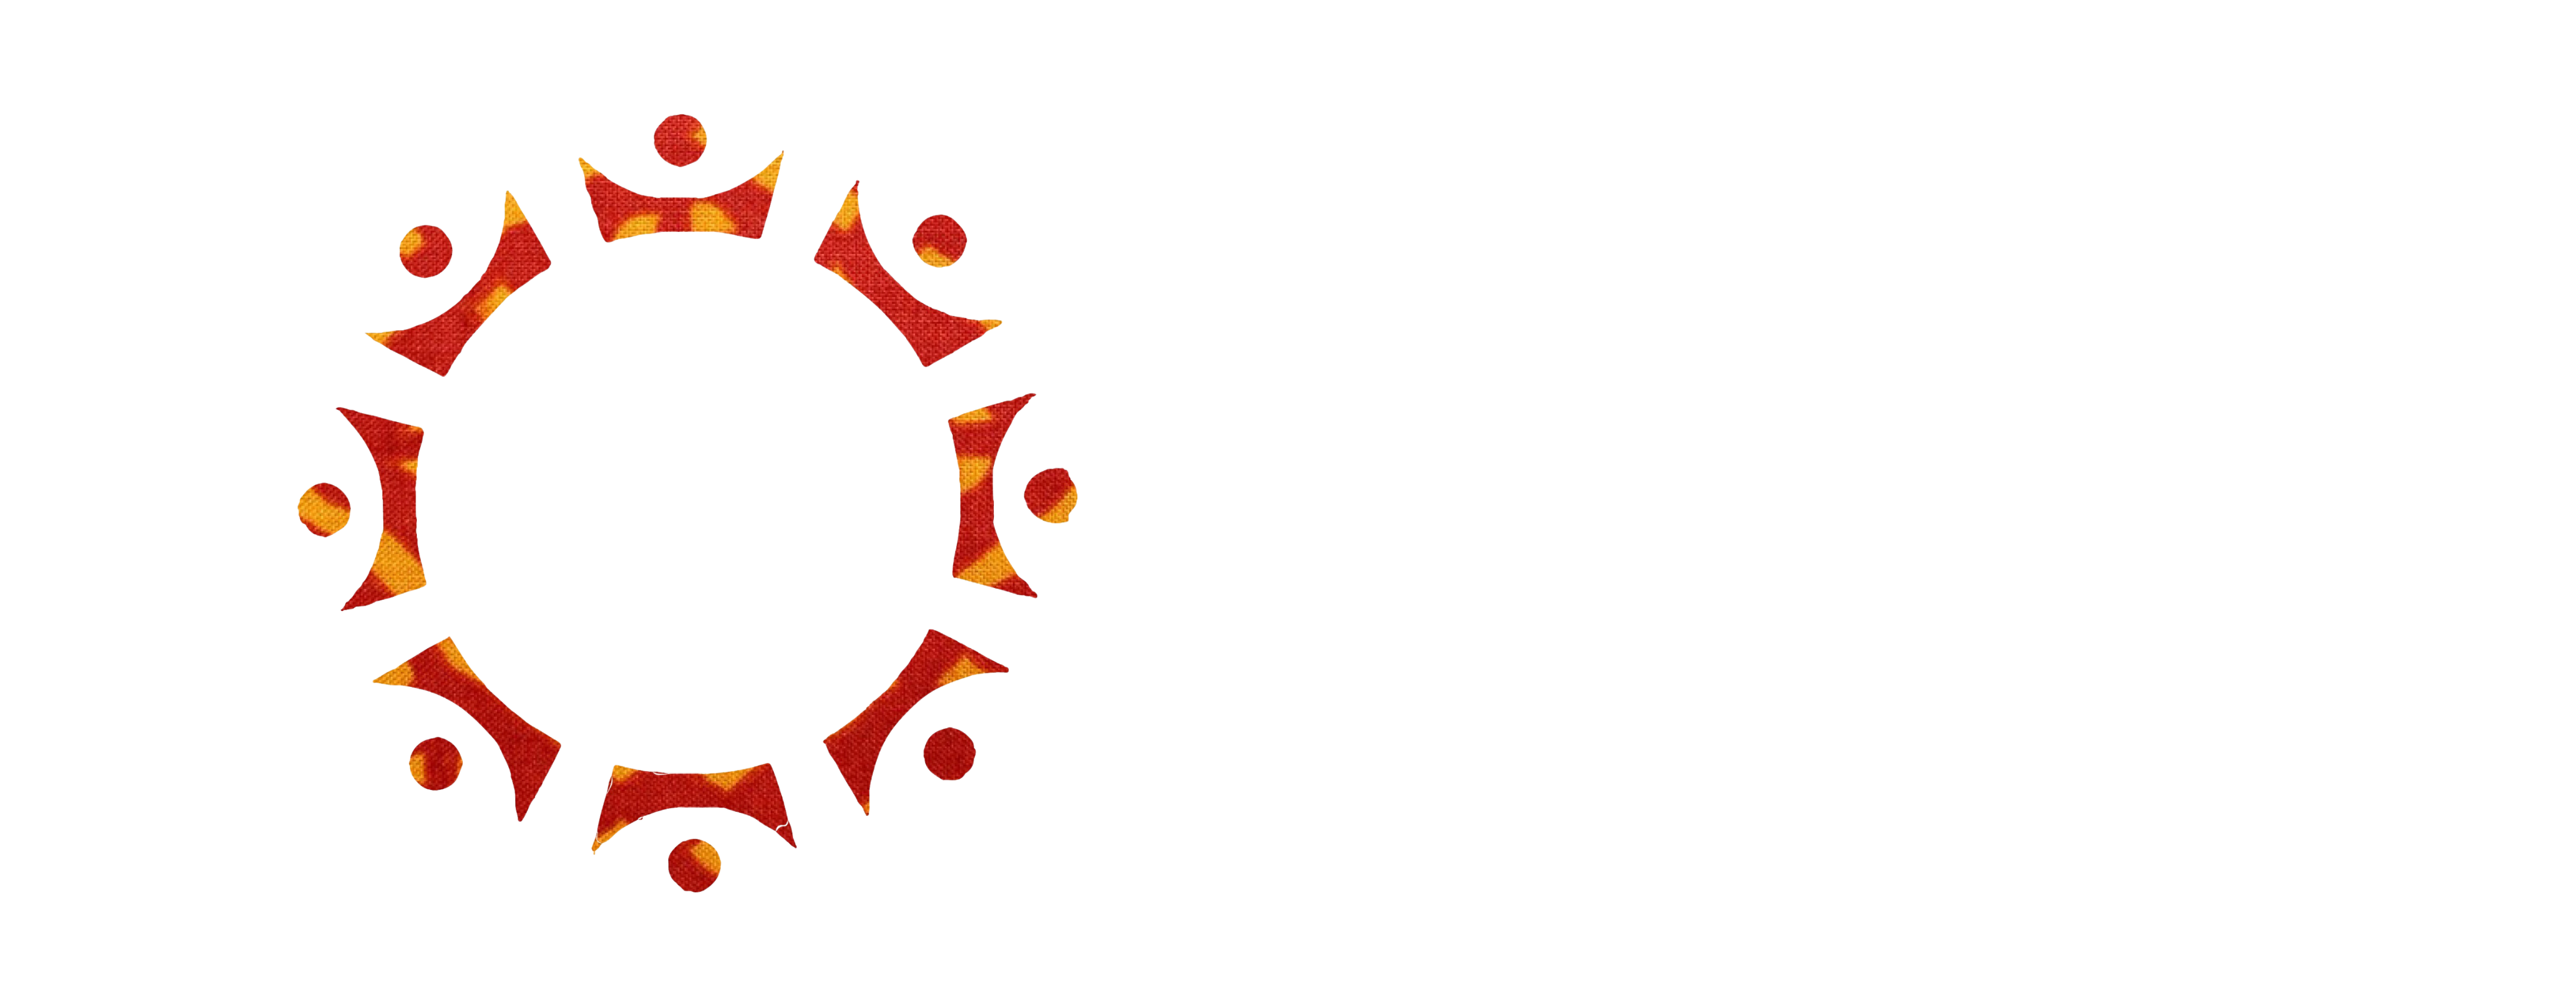 Kadilala